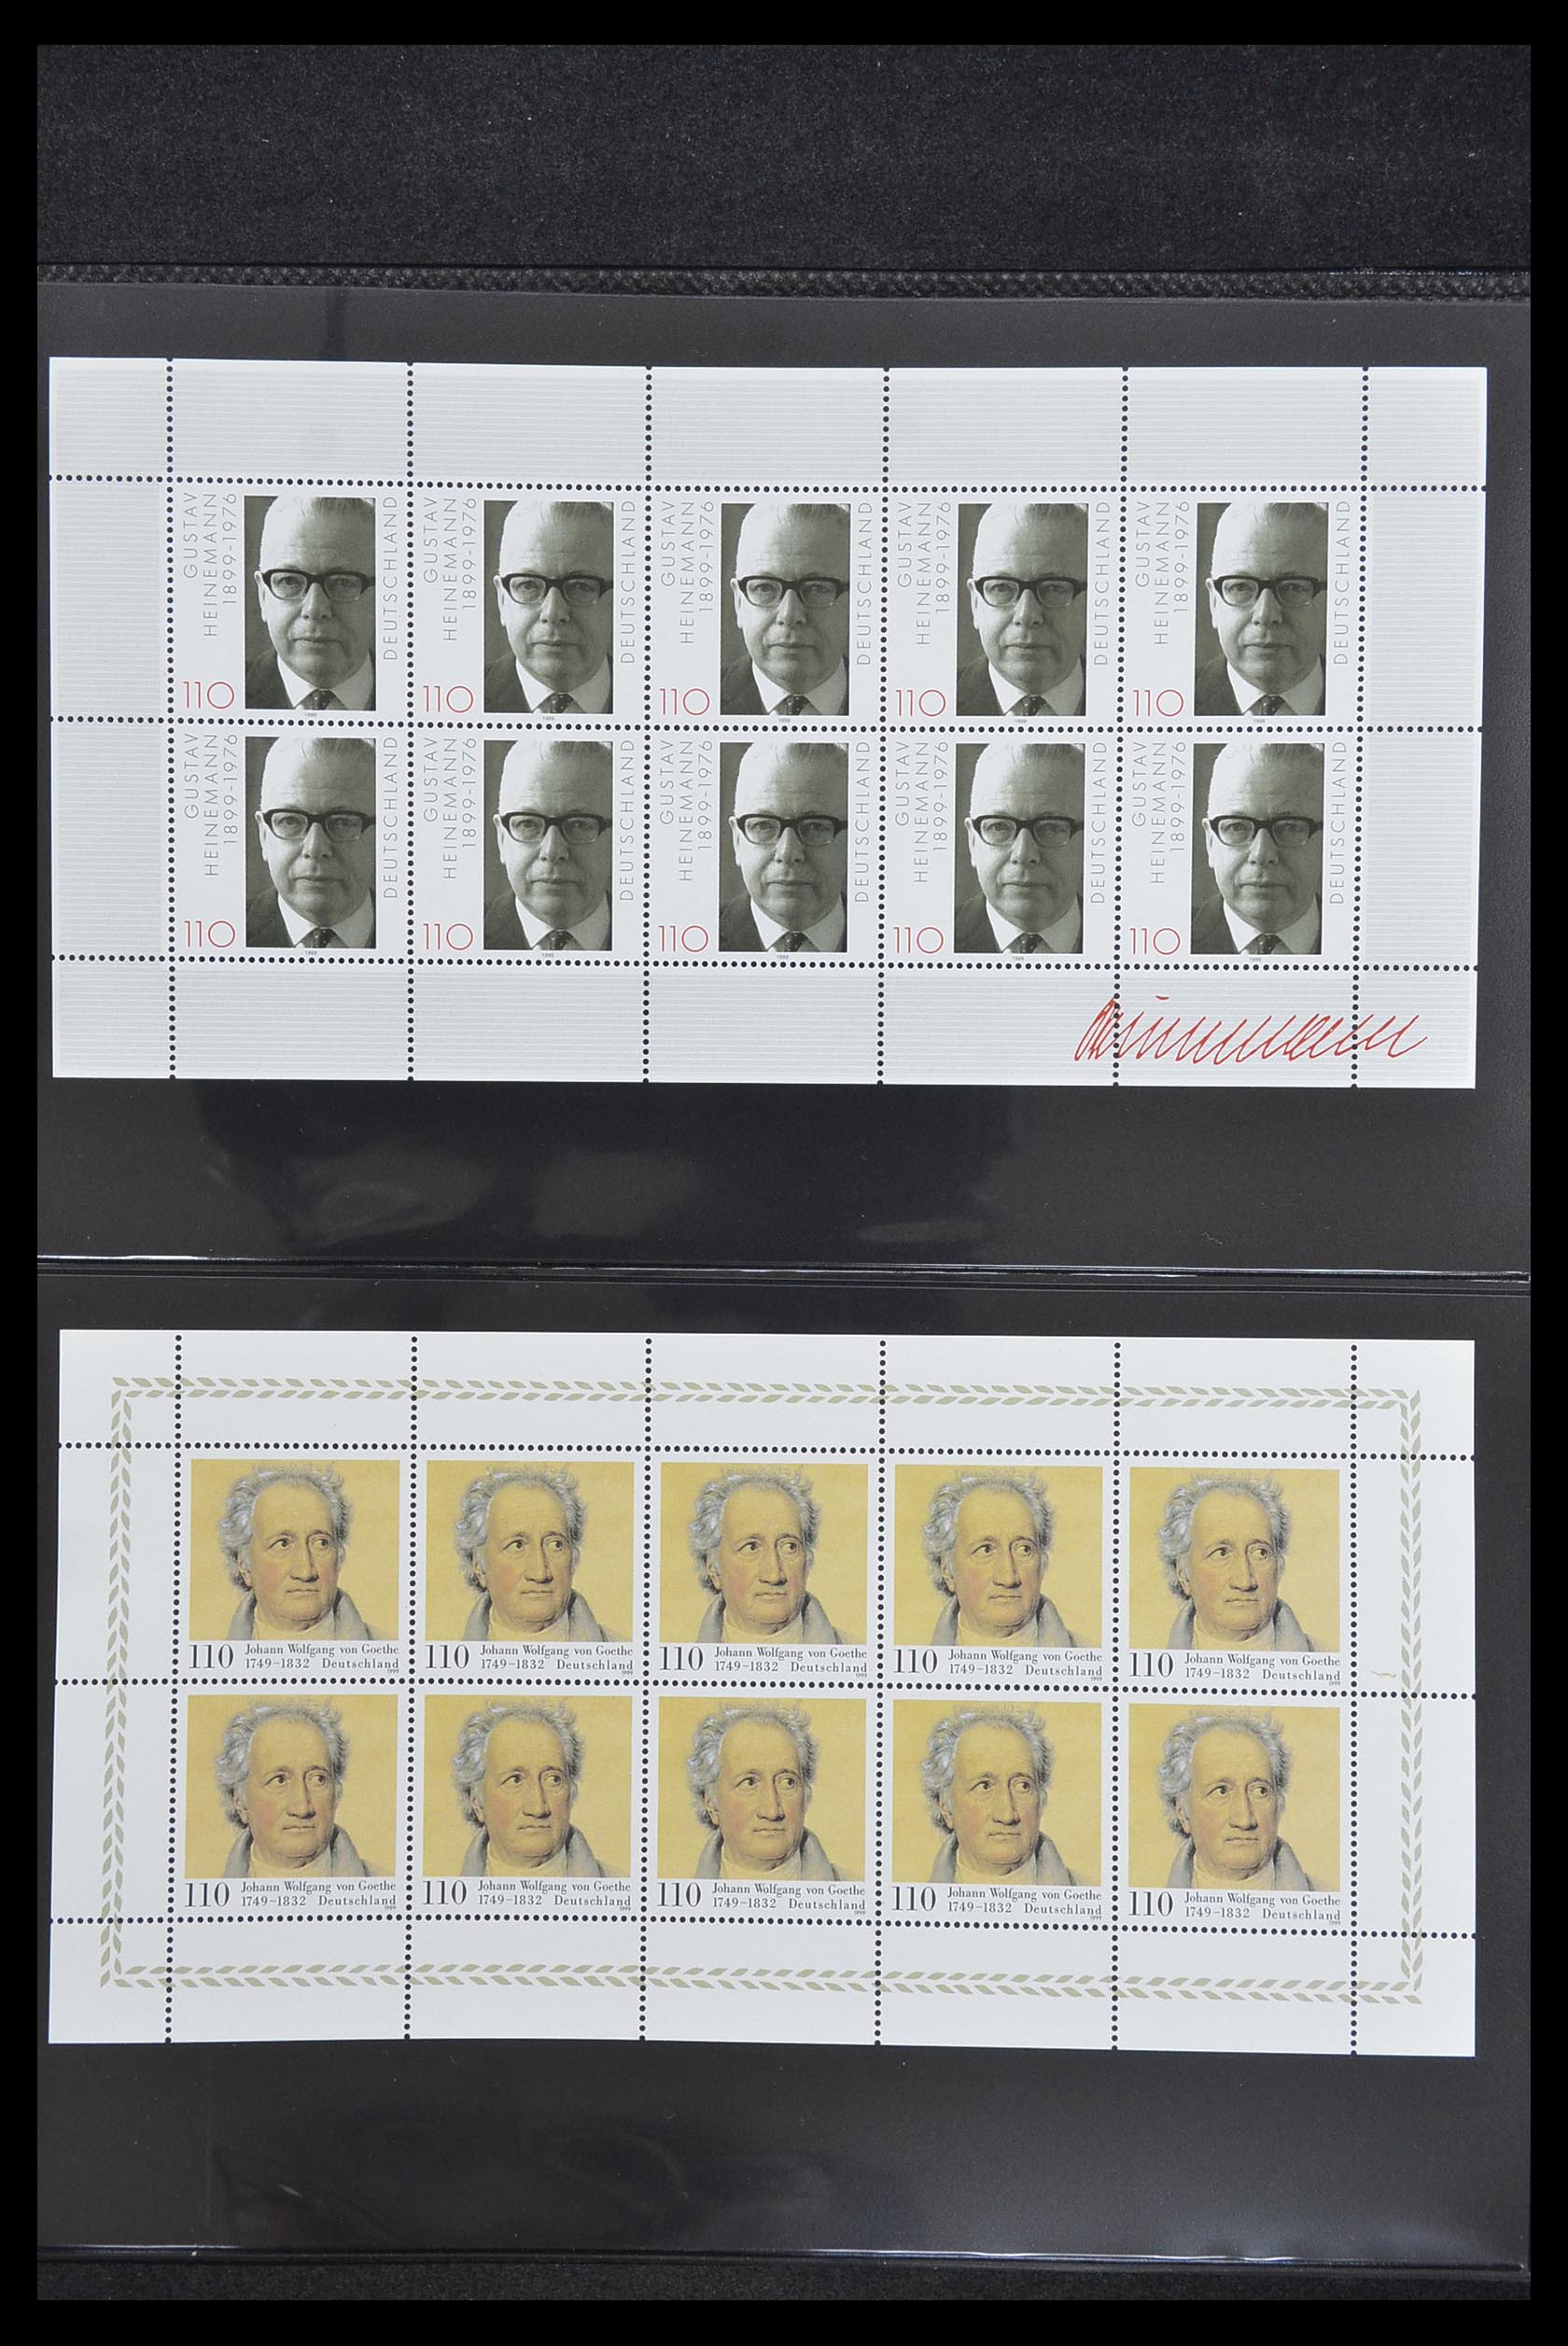 33936 138 - Stamp collection 33936 Bundespost kleinbogen 1994-2000.